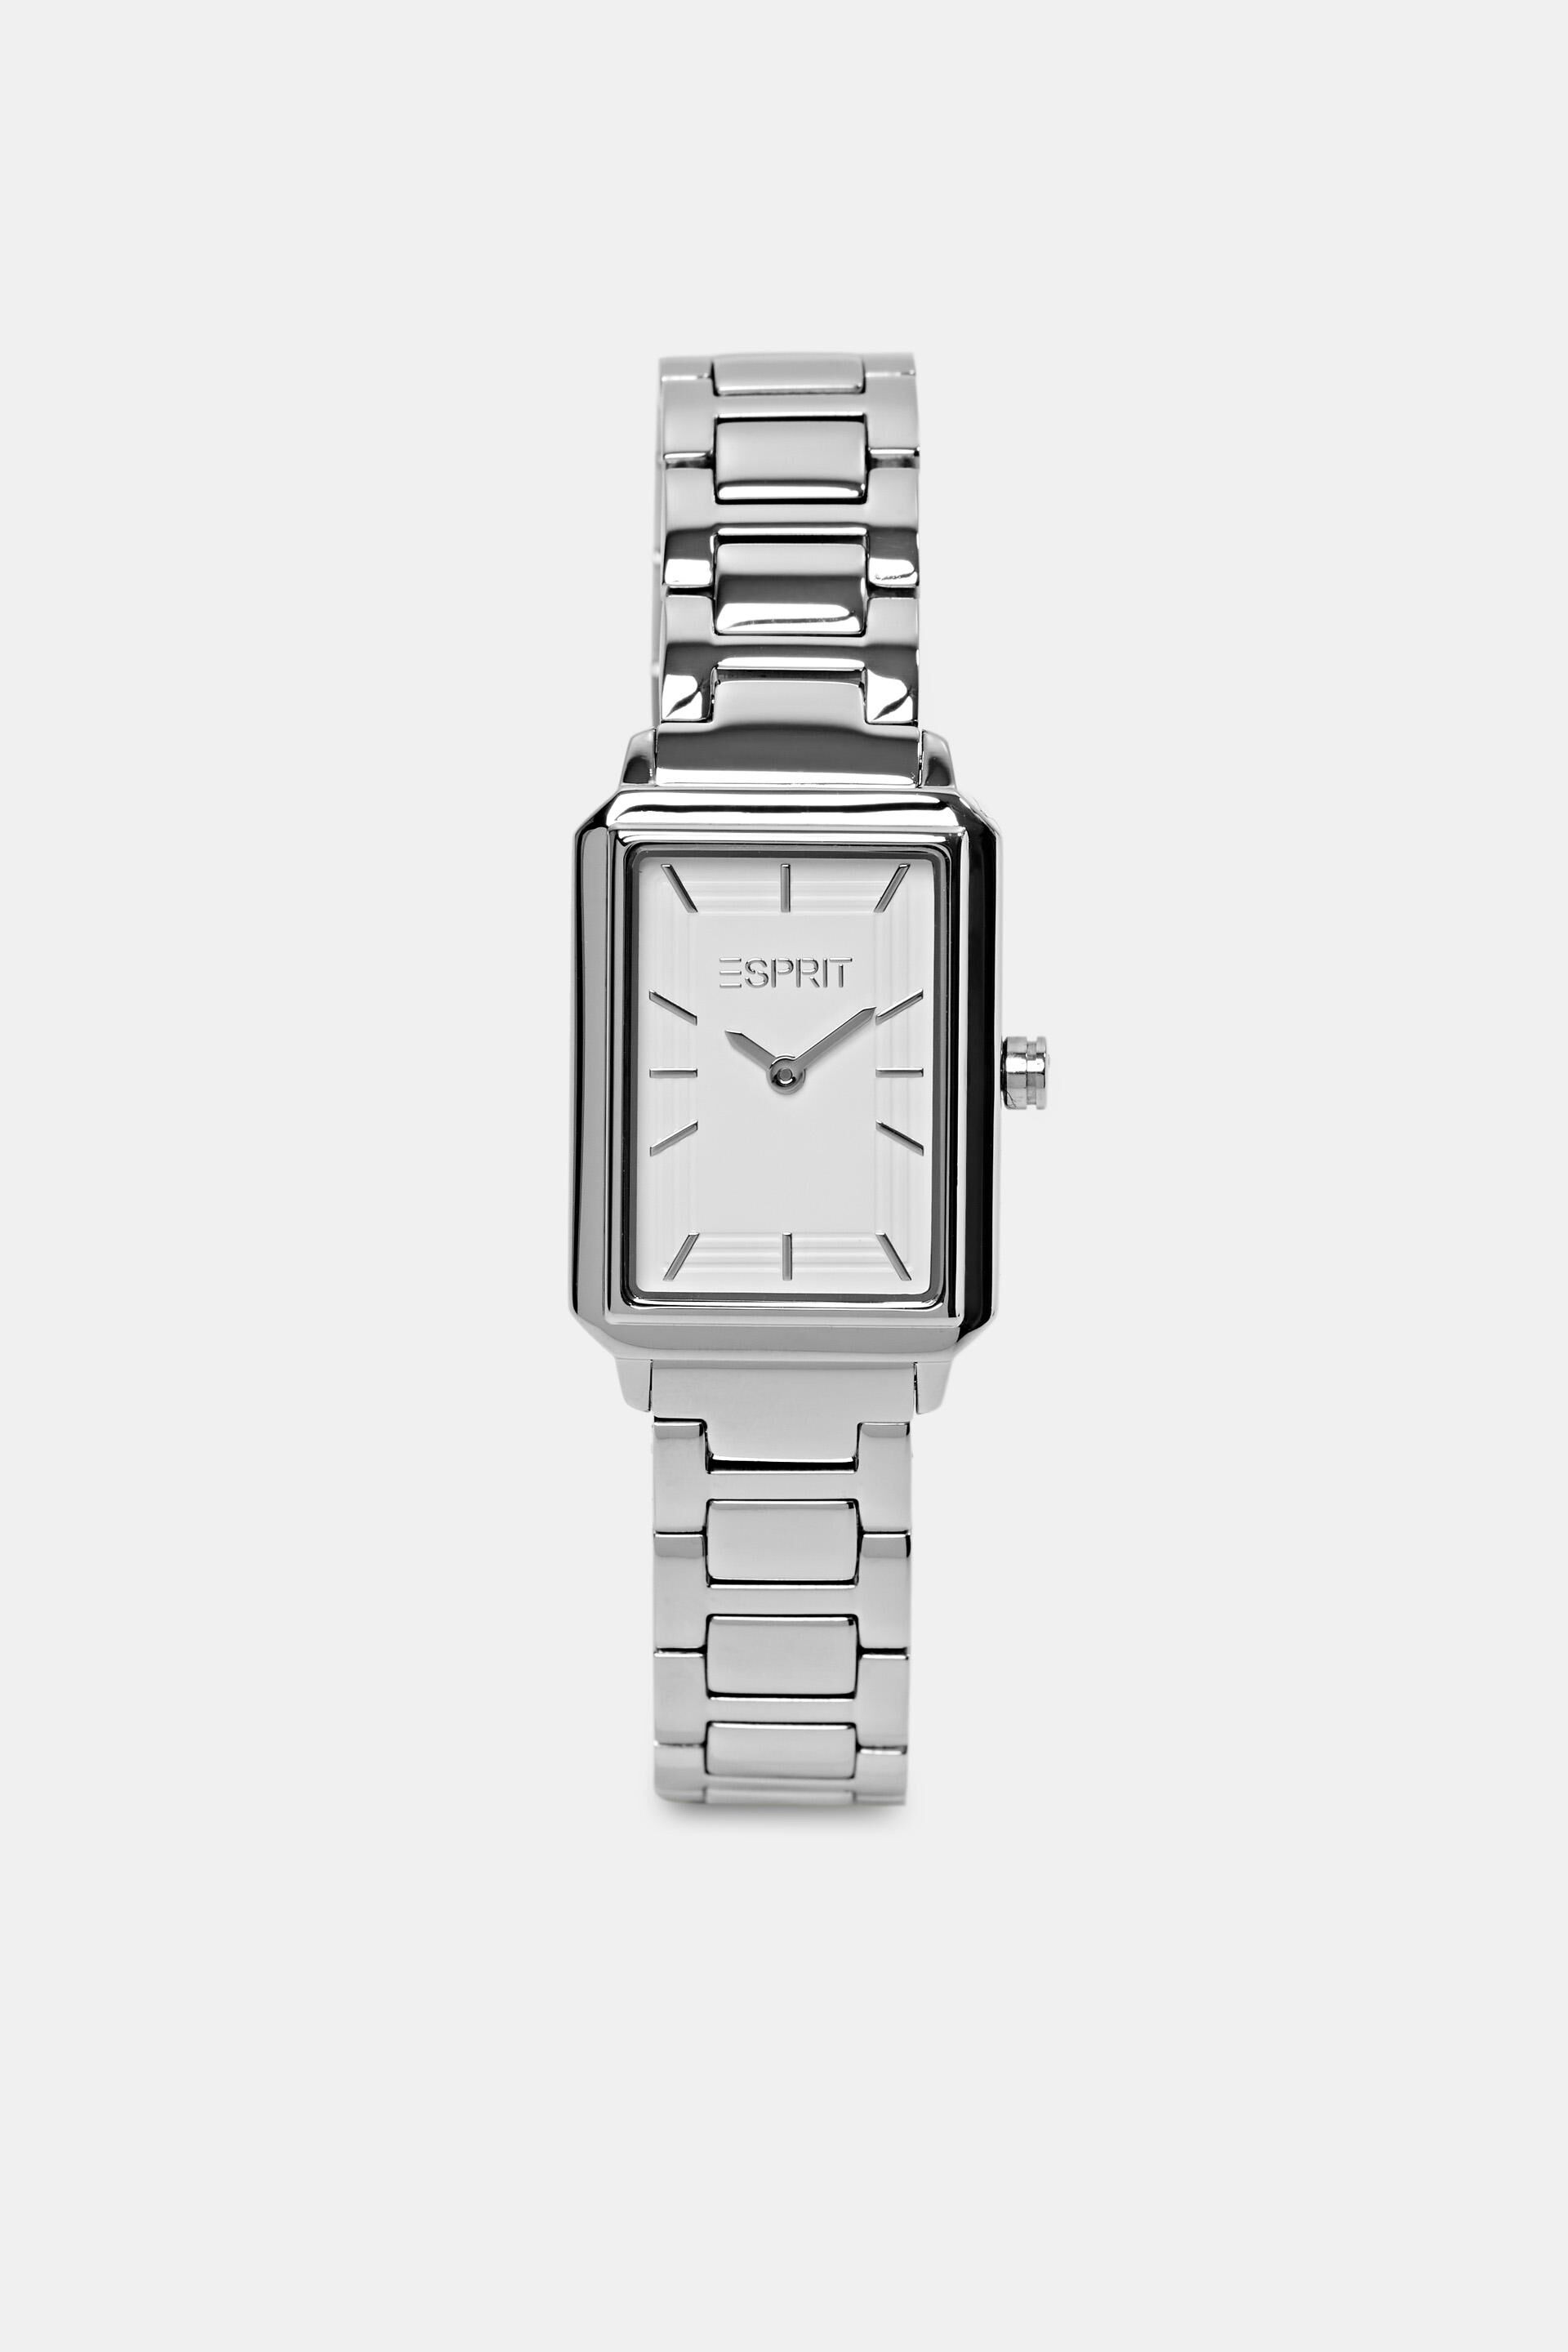 Esprit Online Store Stainless steel watch